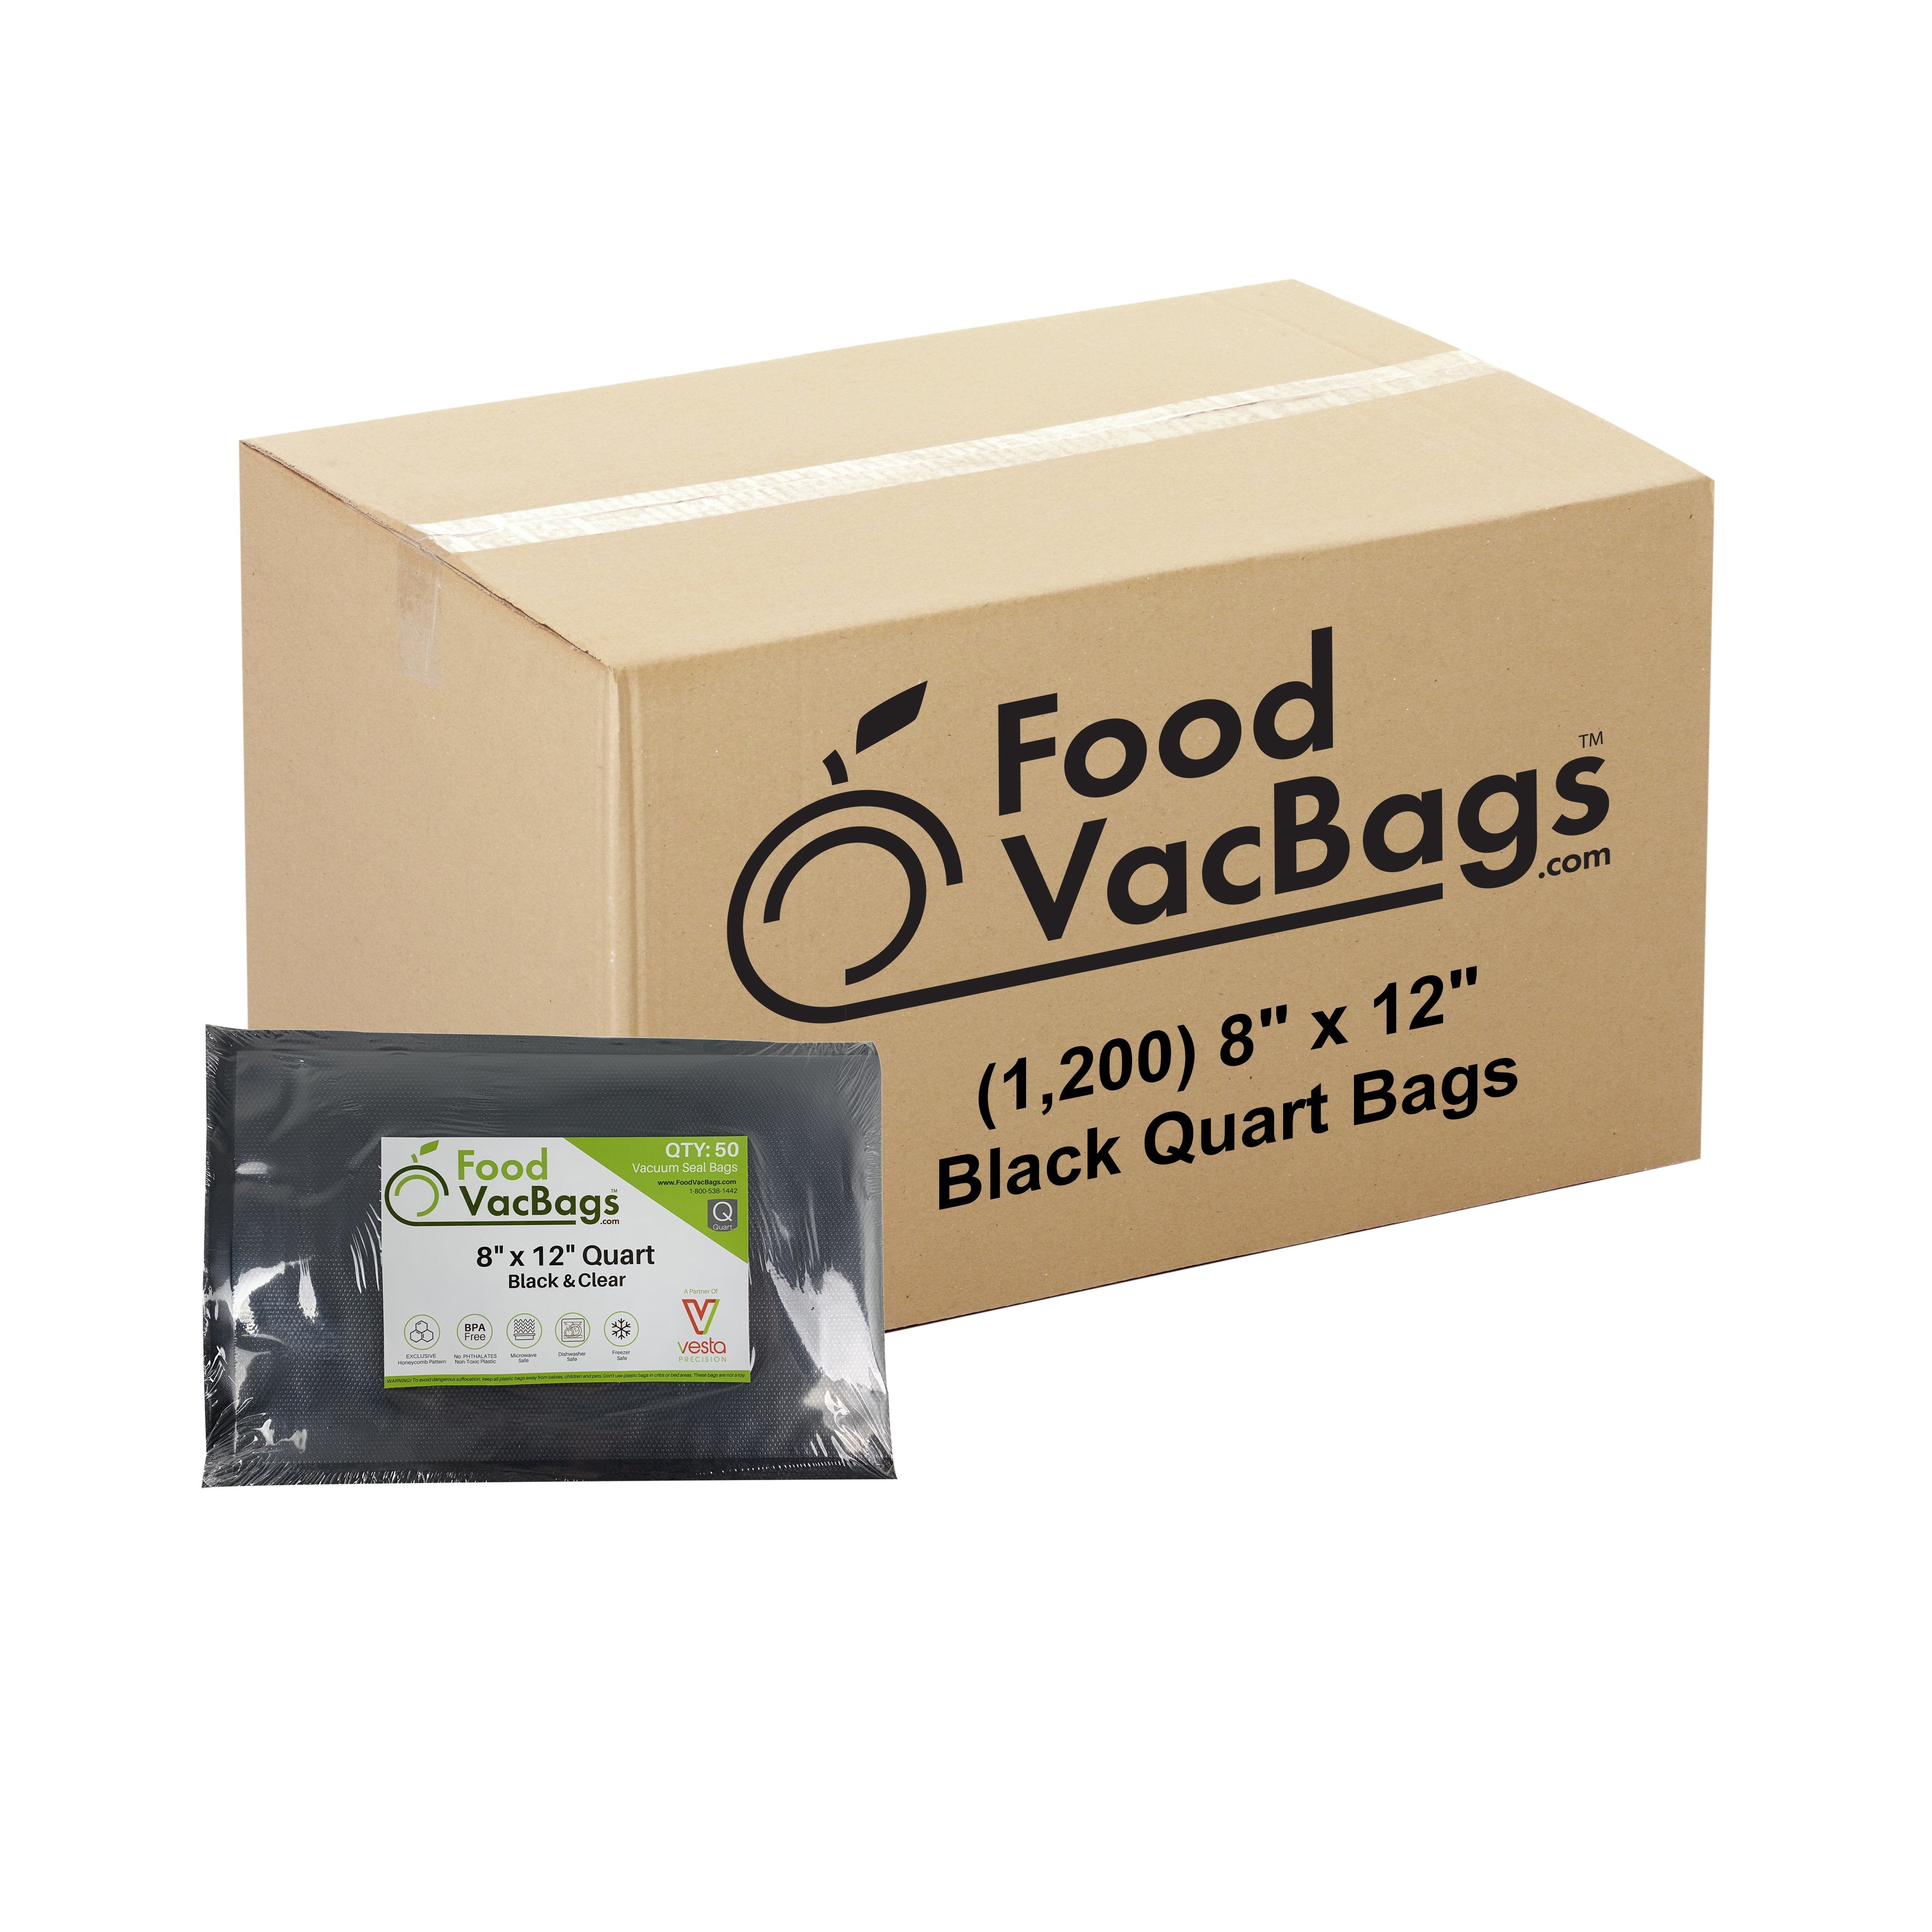 https://foodvacbags.com/cdn/shop/products/8x12-Black-1200_1c0c52f9-13bd-488e-99fb-b69c8561f699.jpg?v=1583271584